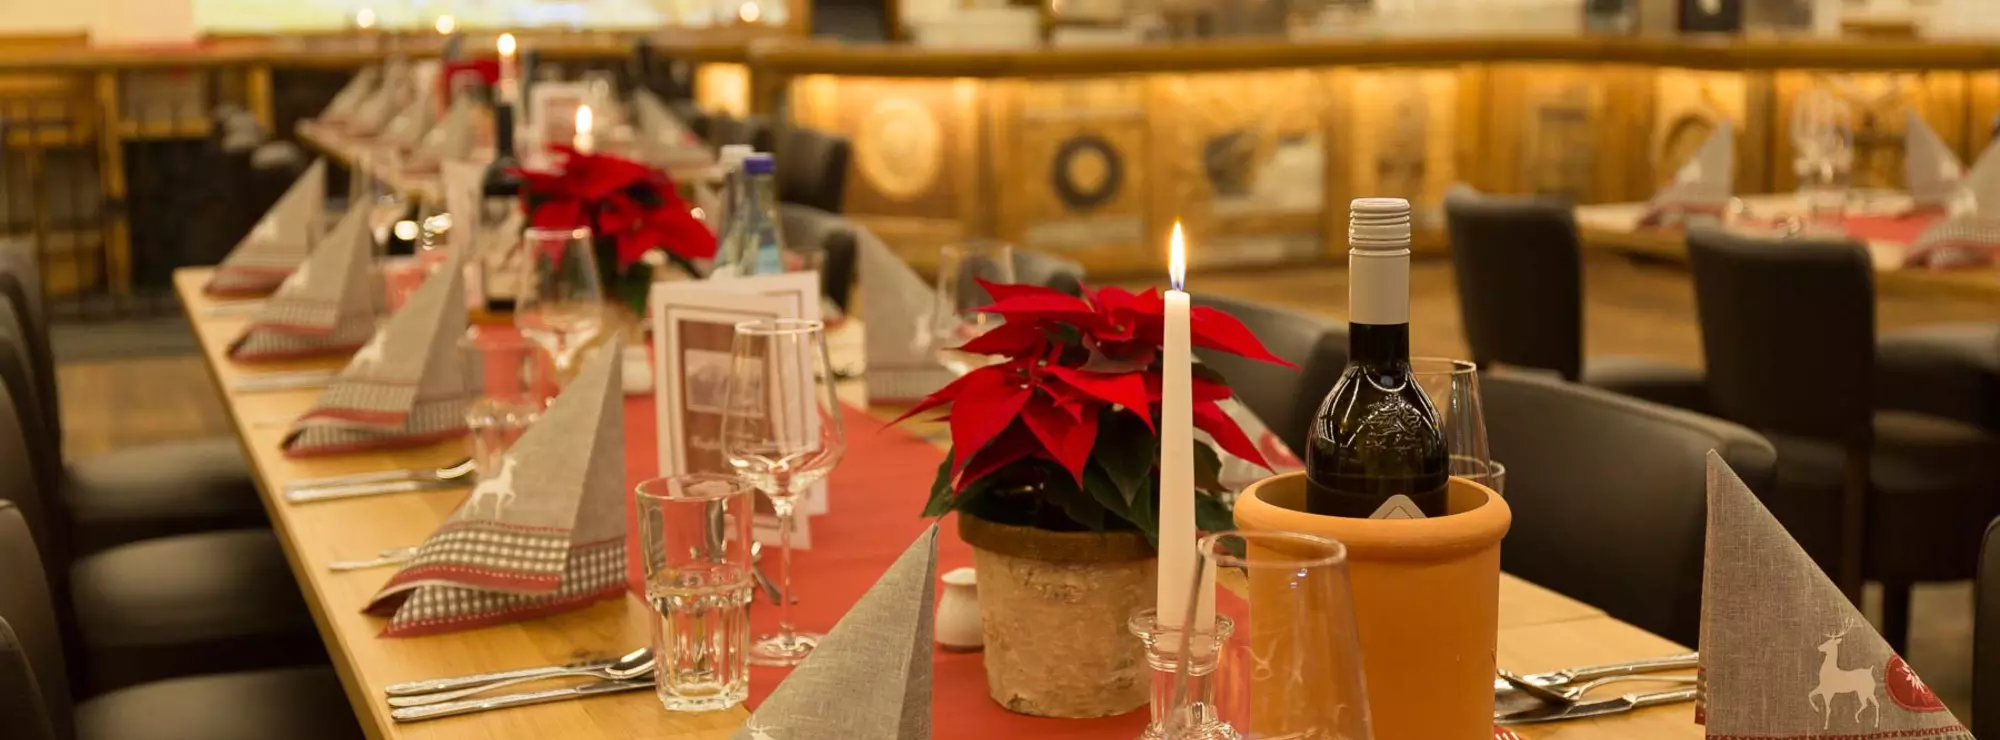 Rot gedeckter Tisch mit Weihnachtsstern und Kerzen und Weinflaschen